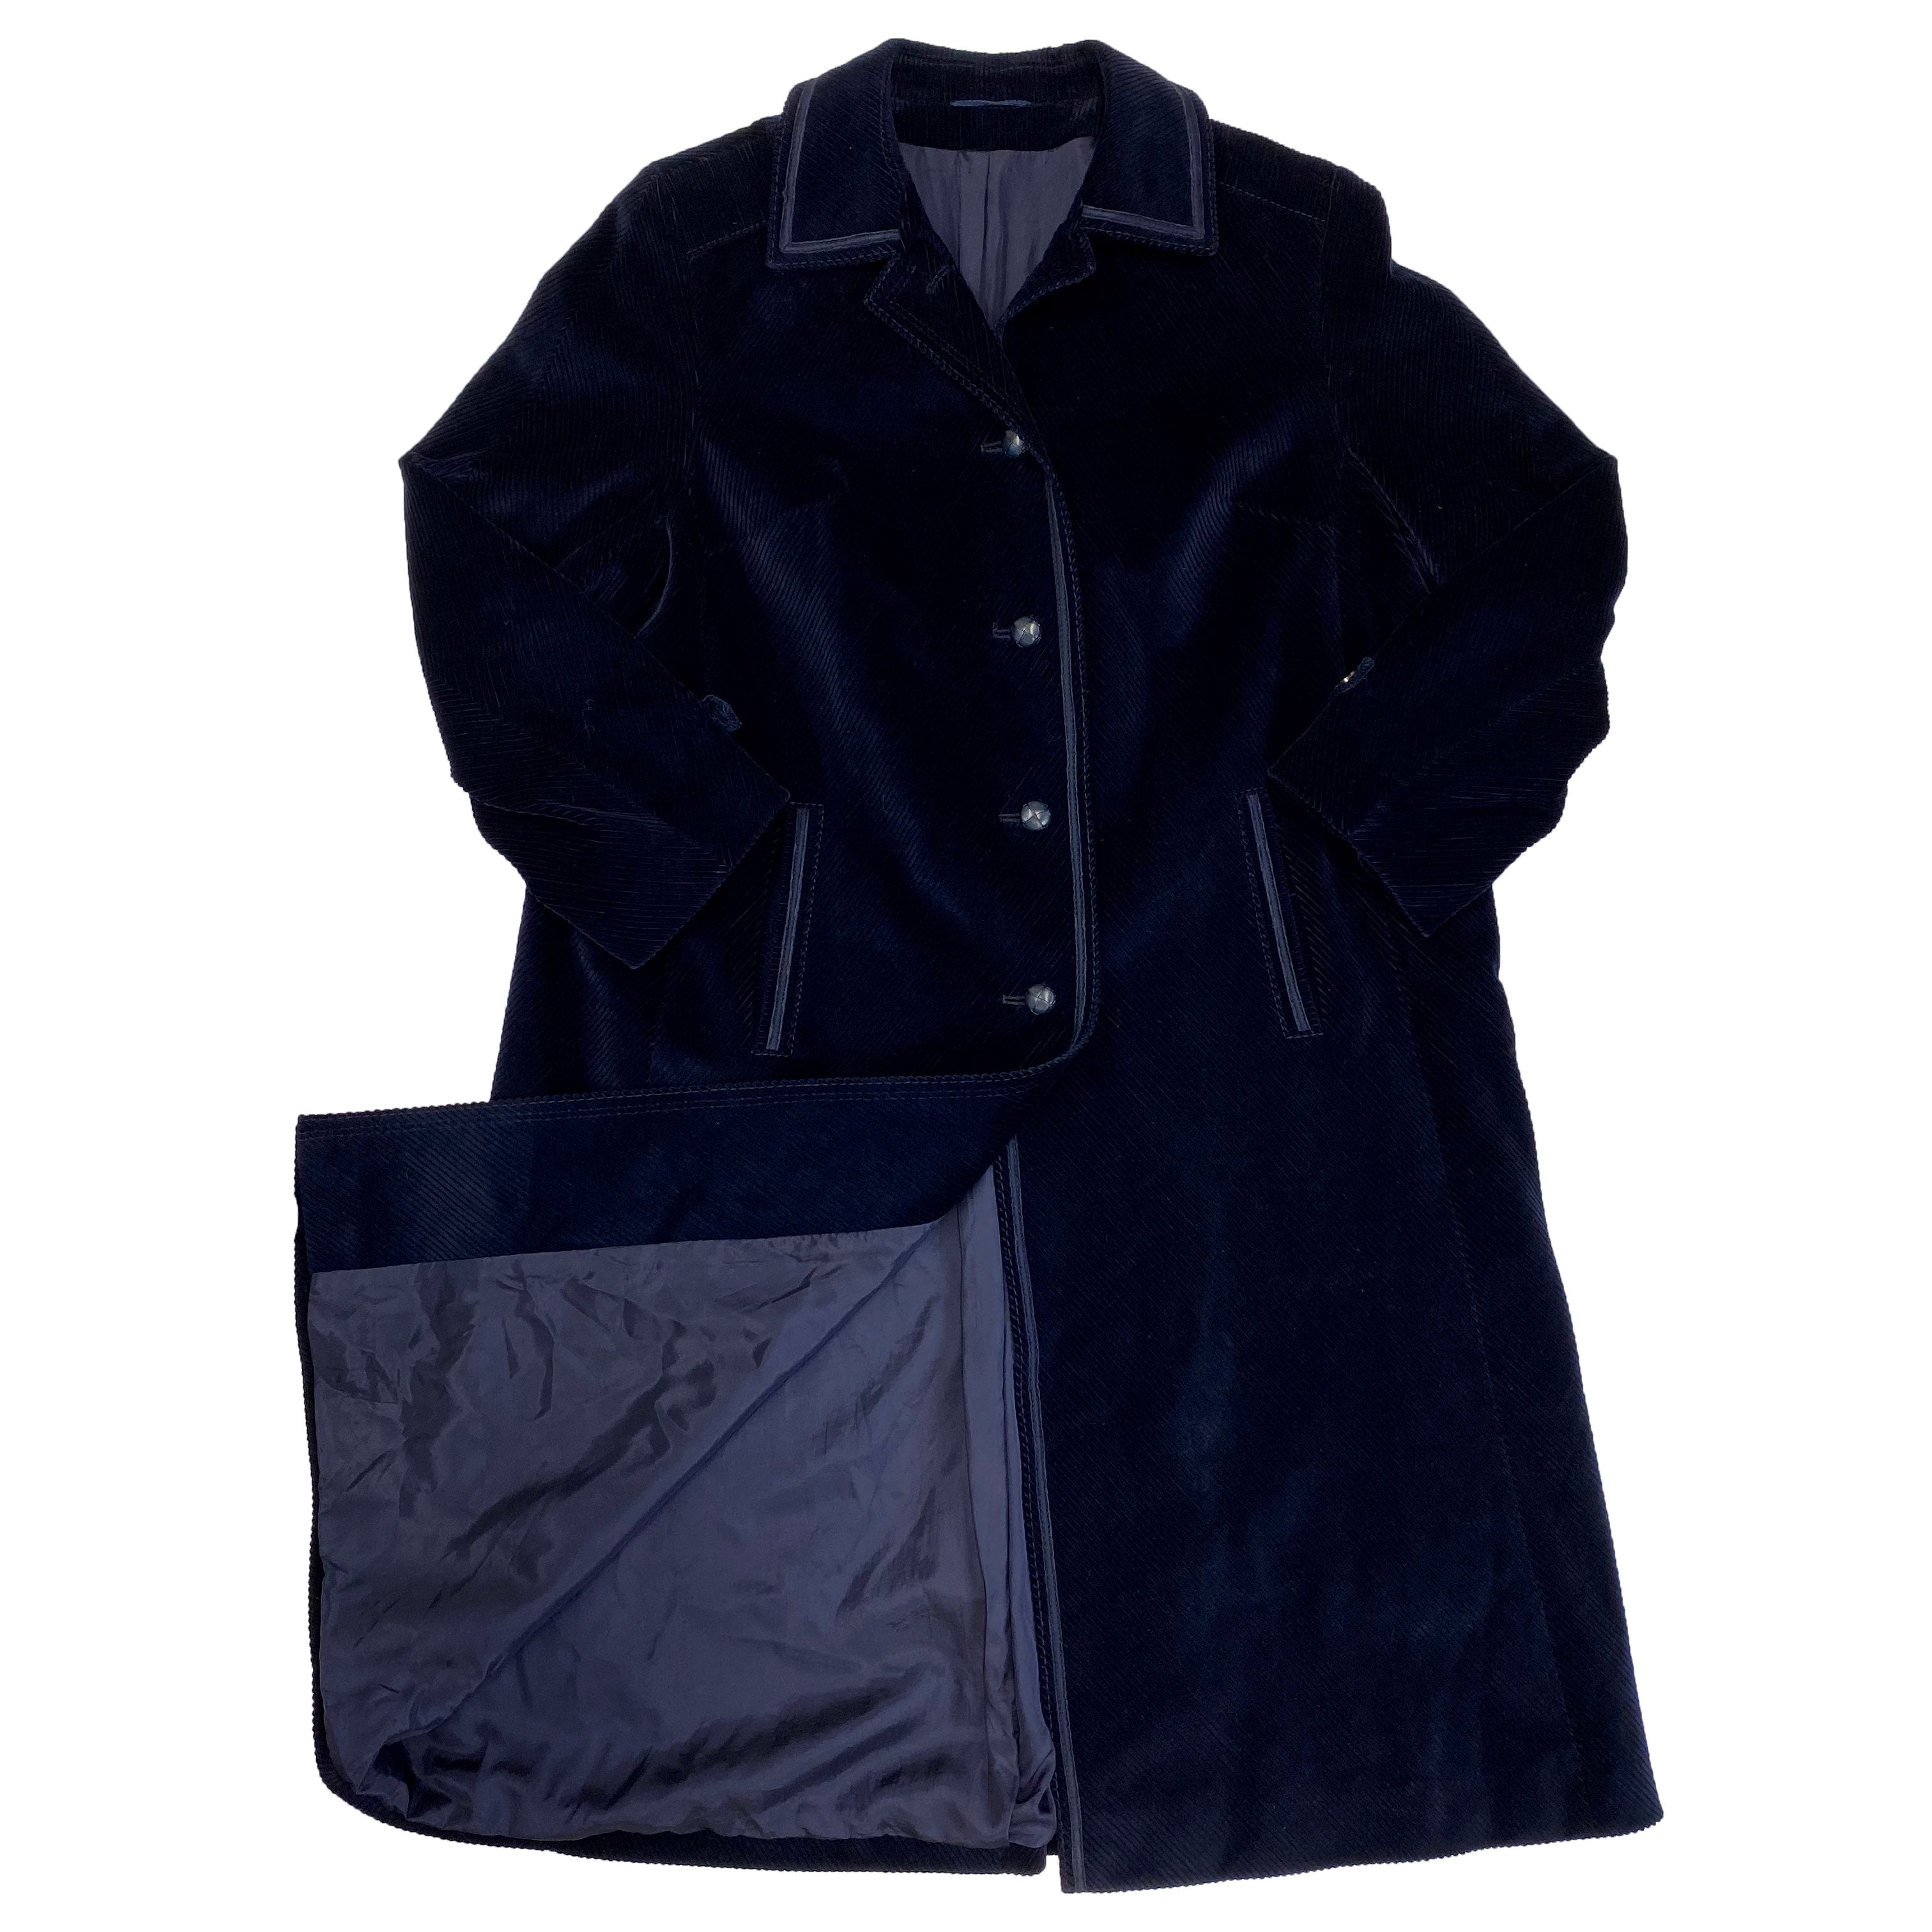 Corduroy Dark Blue Coat